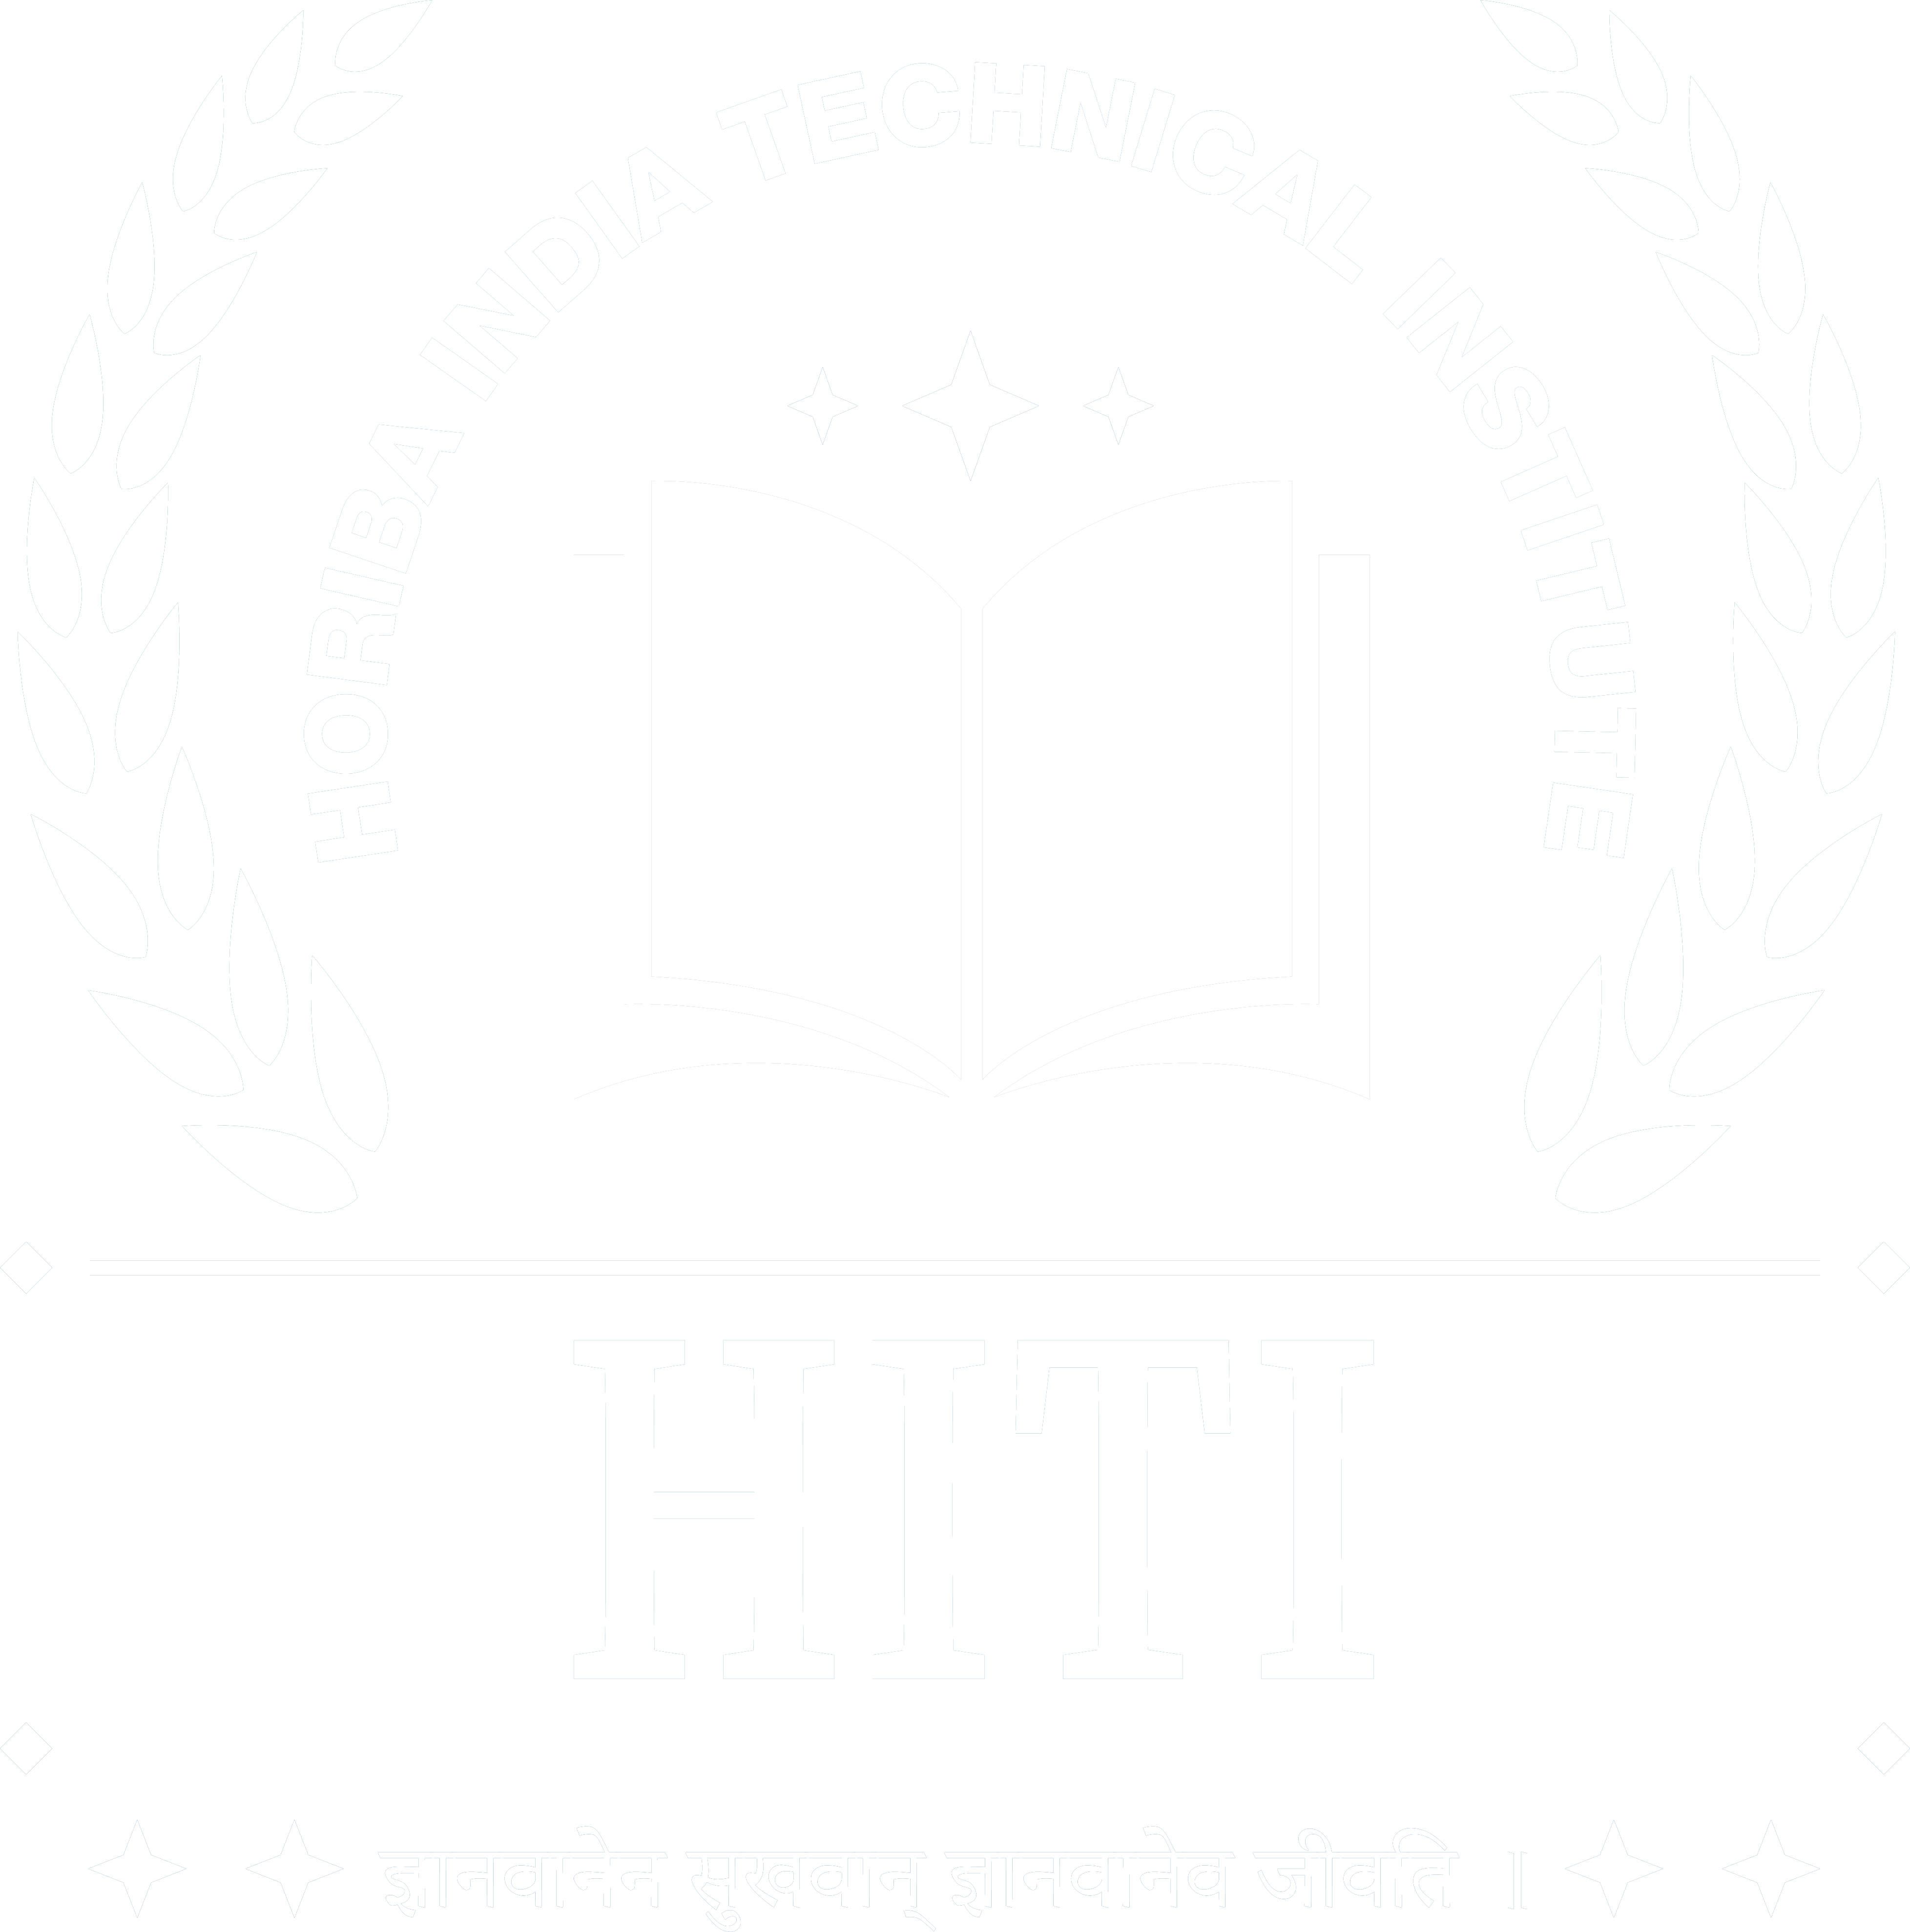 Affiliated HORIBA India Technical Institute